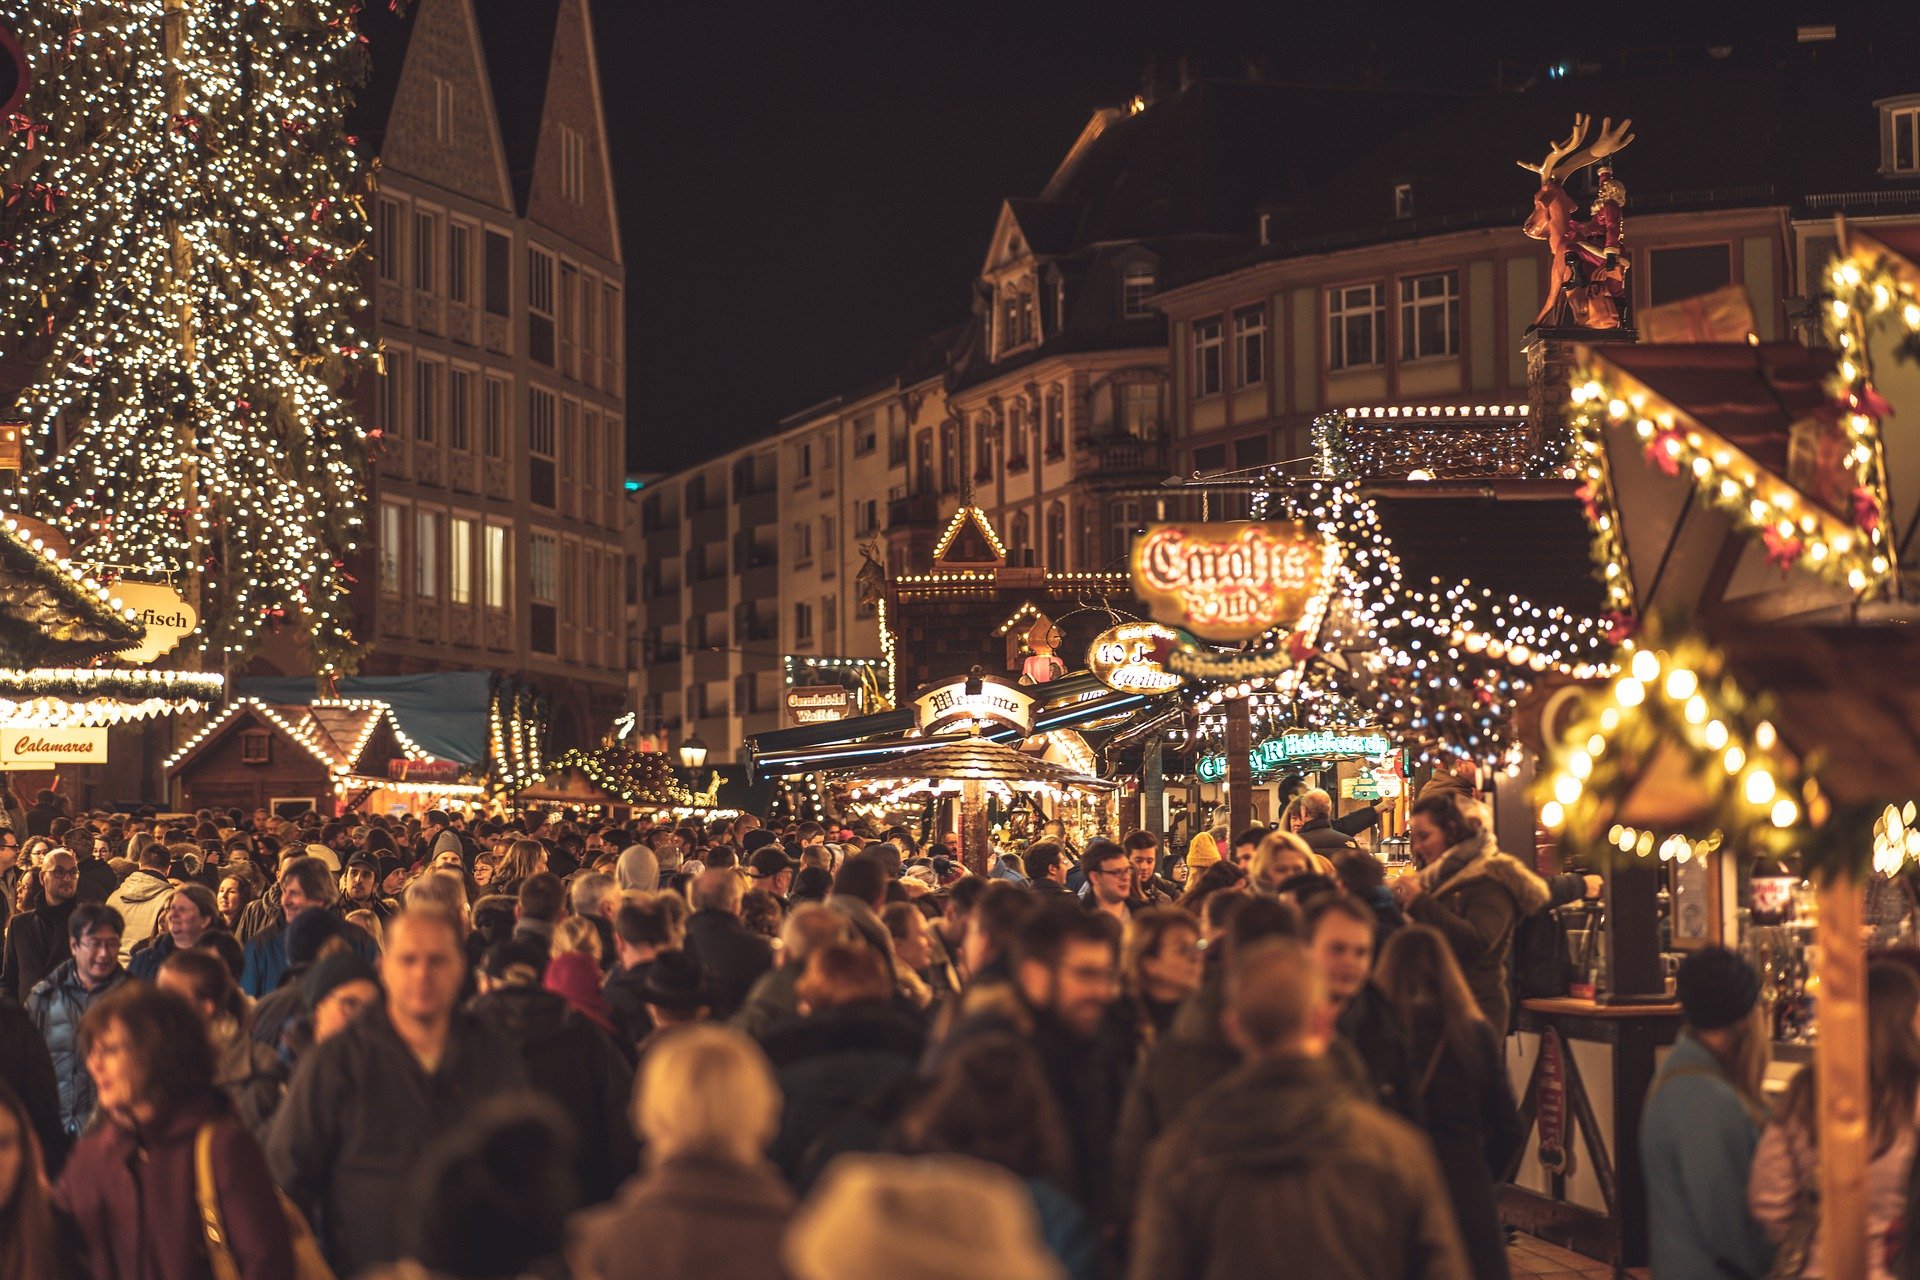 Vianočné trhy – varené víno, chutné jedlo a darčeky. Ale ako to celé začalo?